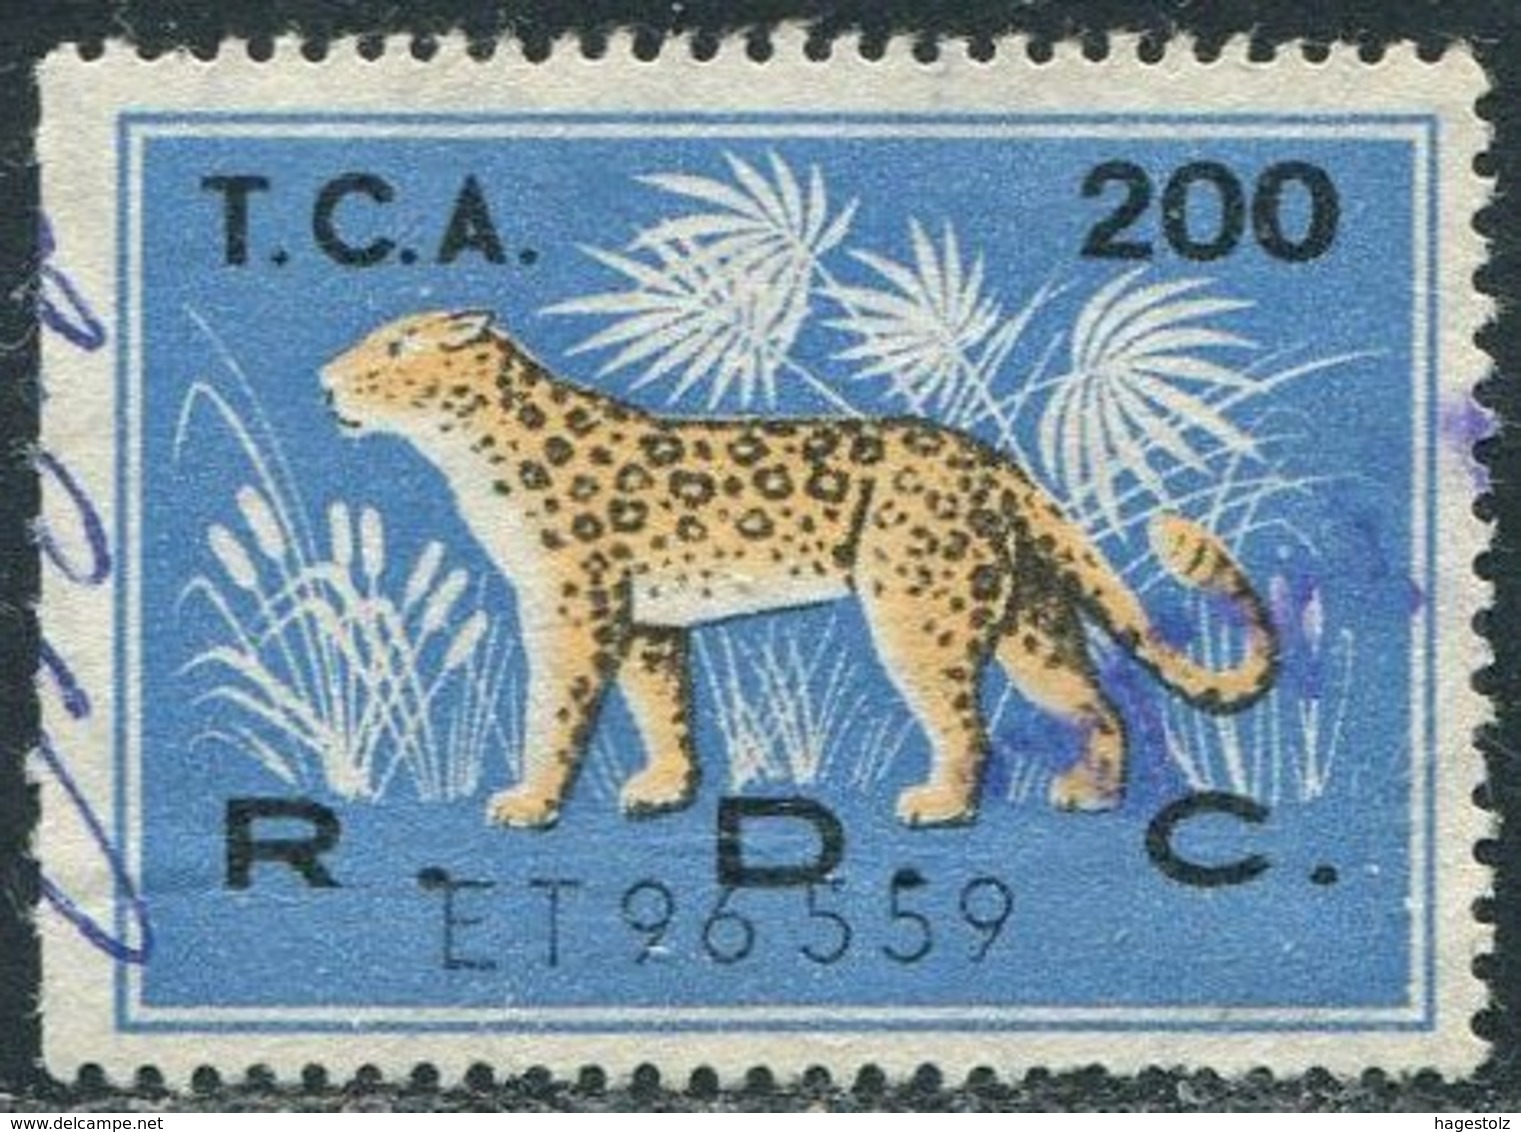 Congo - Kinshasa (Zaire) 1960's LEOPARD Revenue 200 Fiscal Tax Leopardo Gebührenmarke Stempelmarke - Felinos